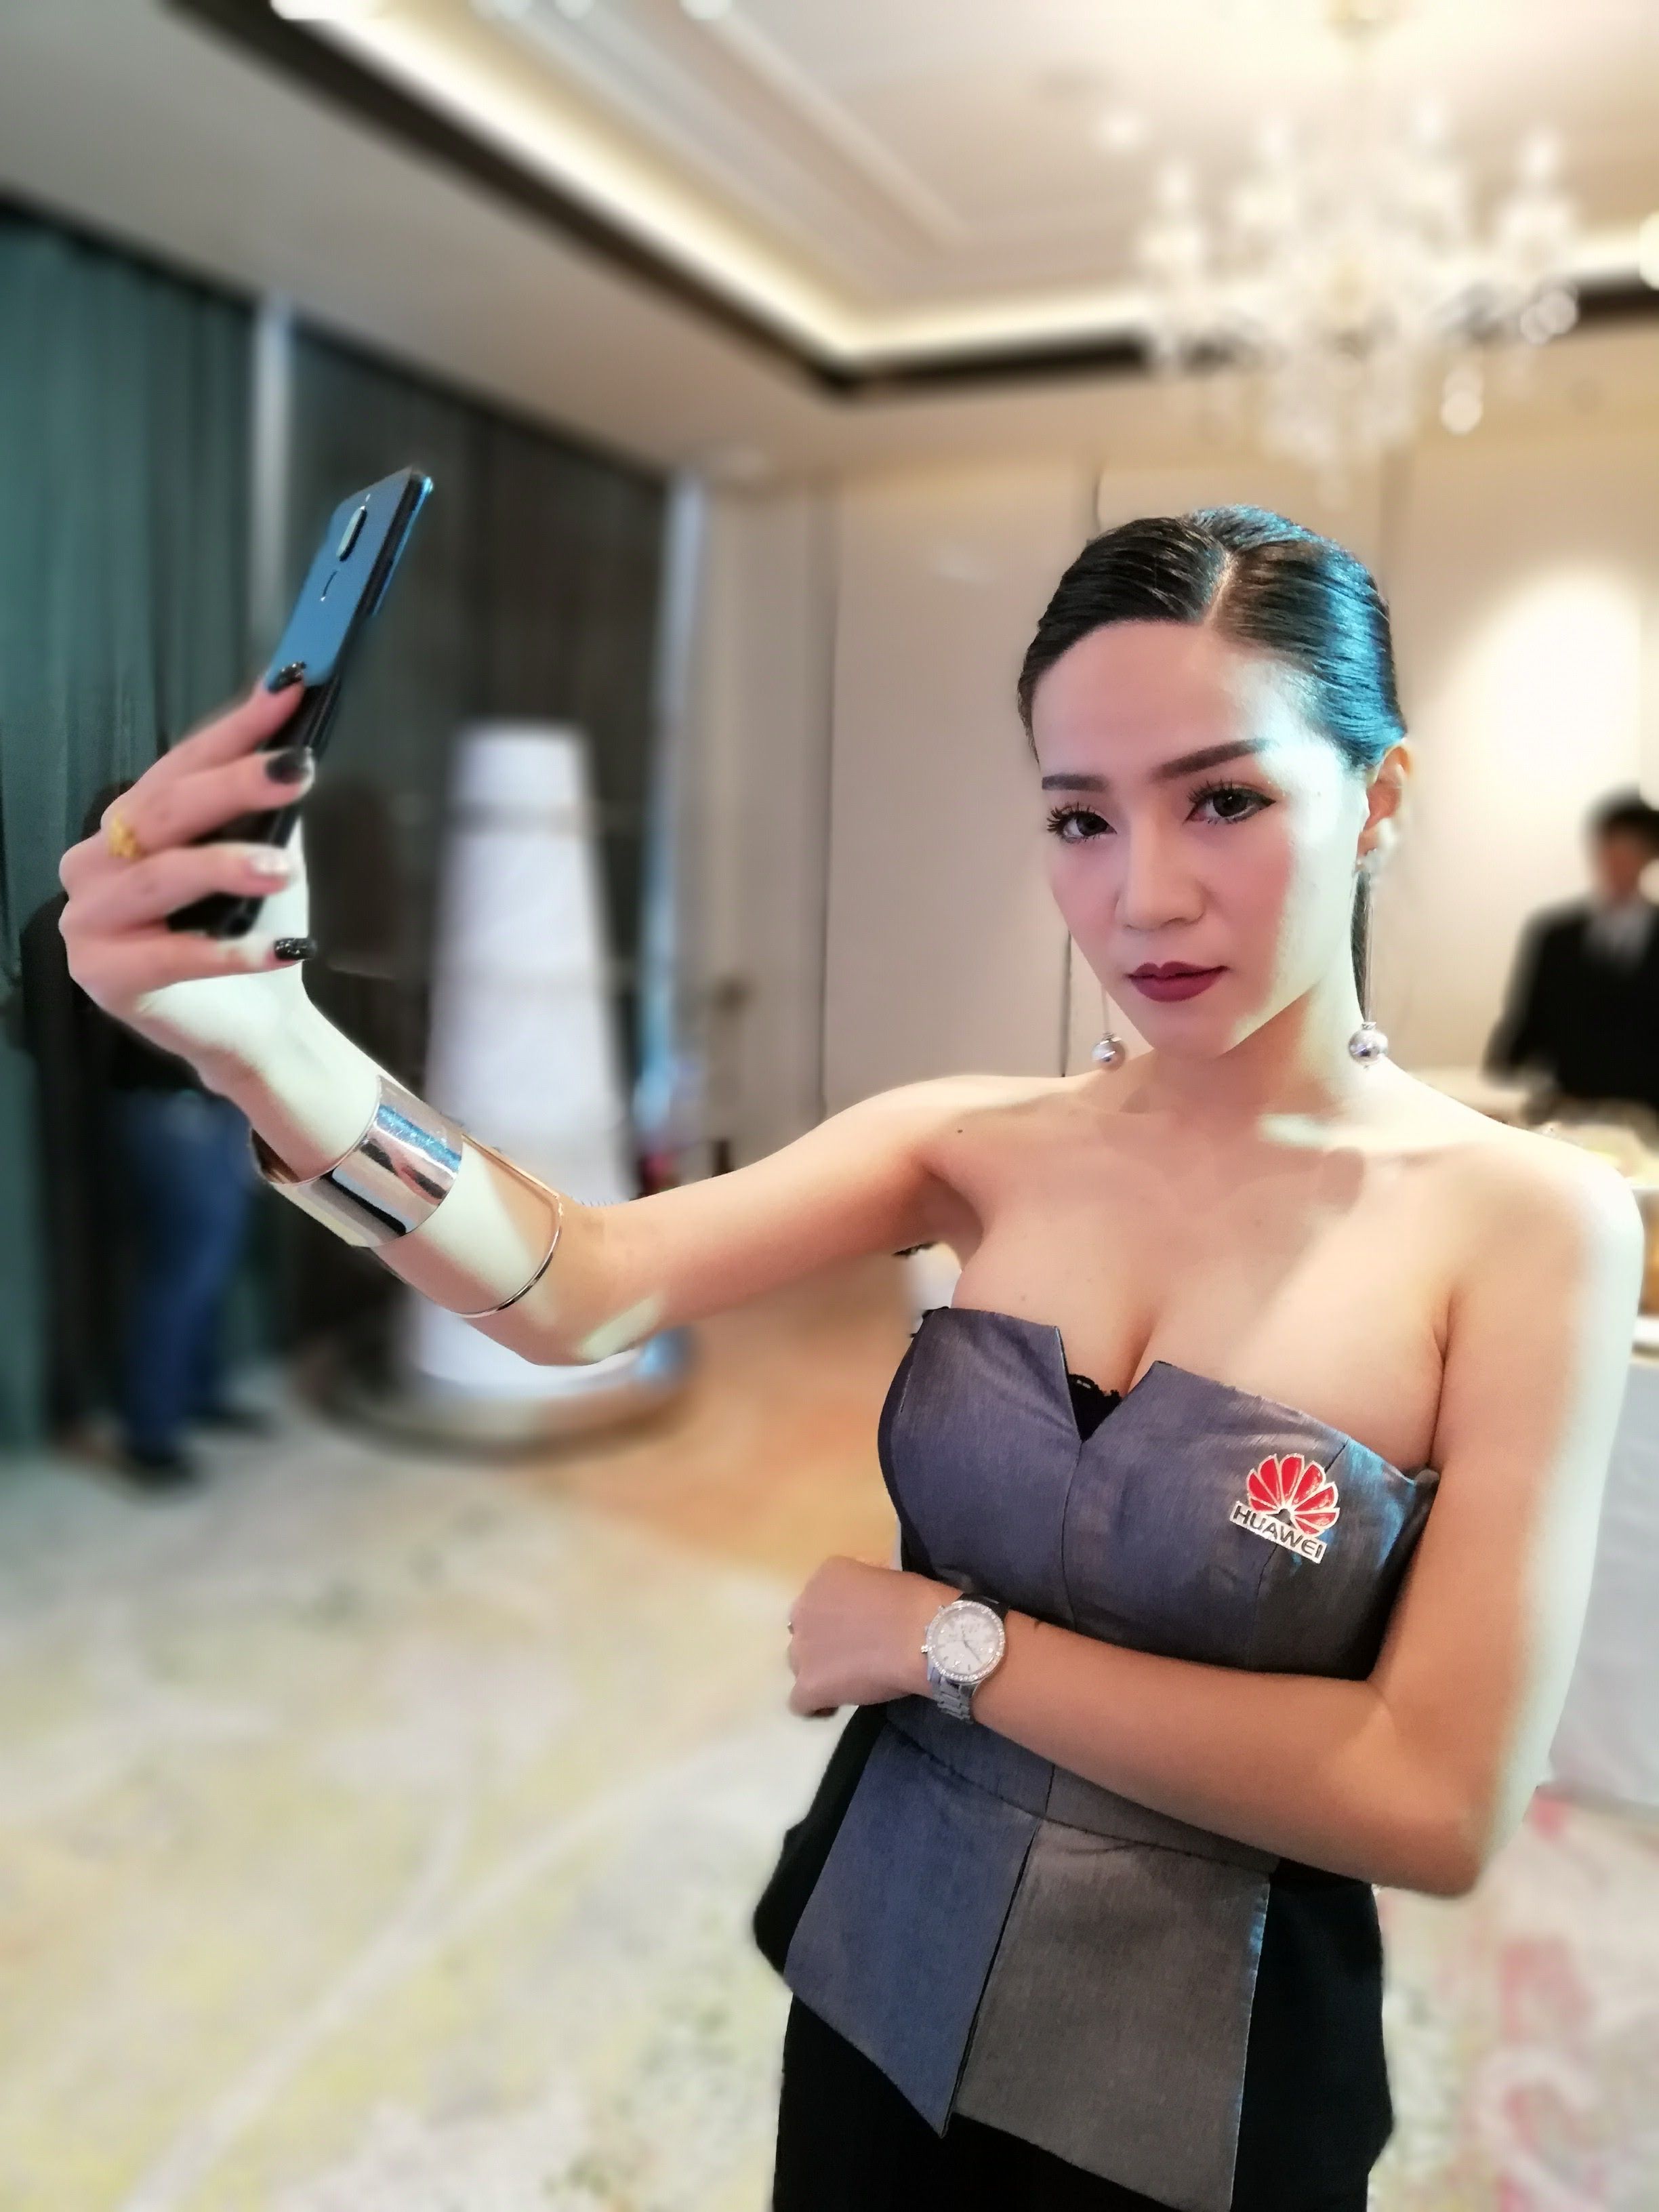 [Review] รีวิว Huawei nova 2i สเปคดี จอใหญ่ สี่กล้อง ในราคาสุดคุ้ม 10,900 บาท